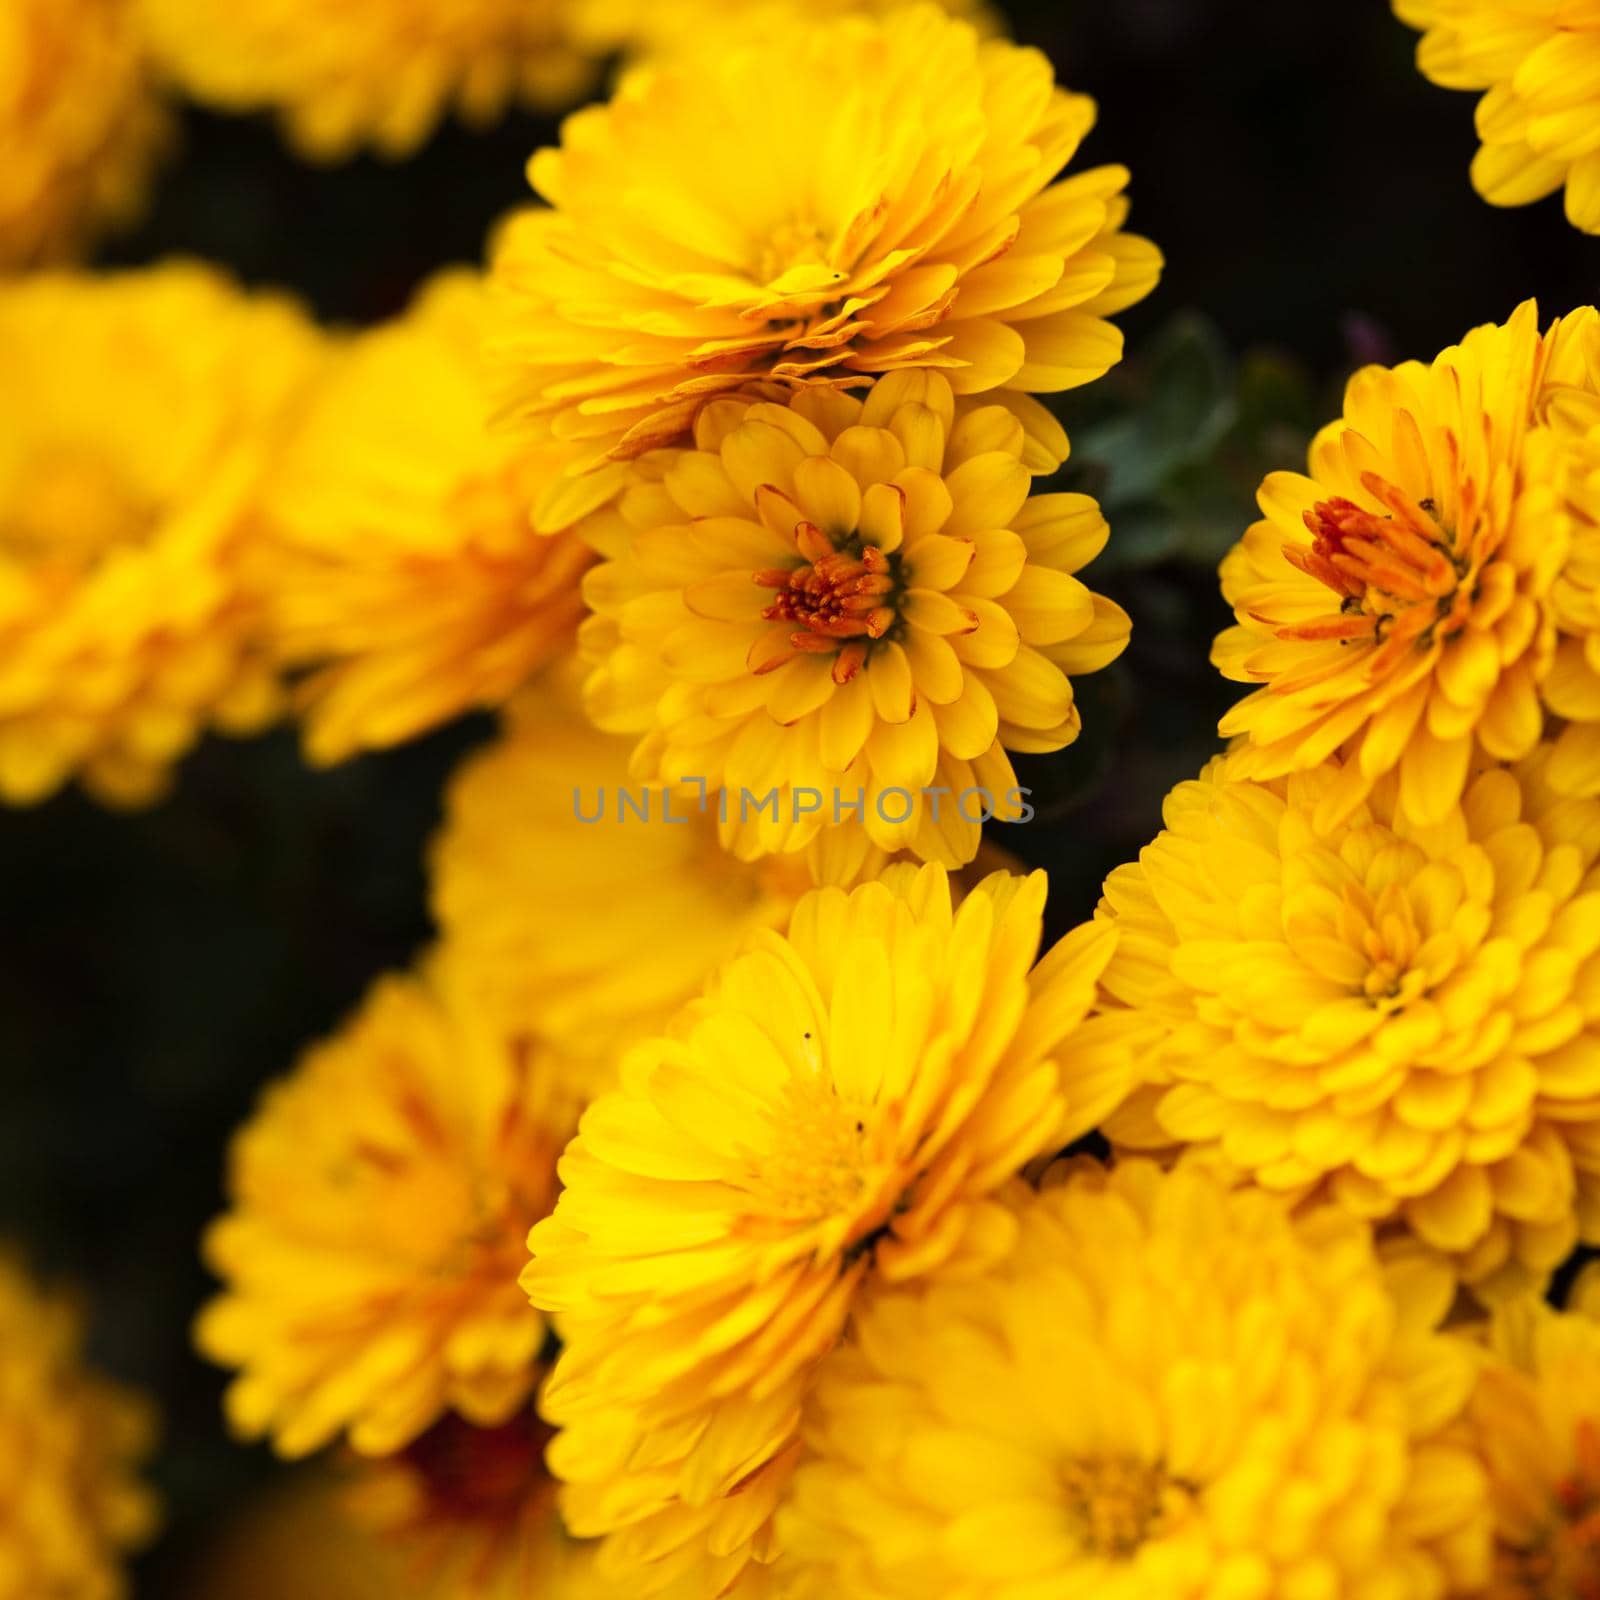 Yellow chrysanthemum by oksix